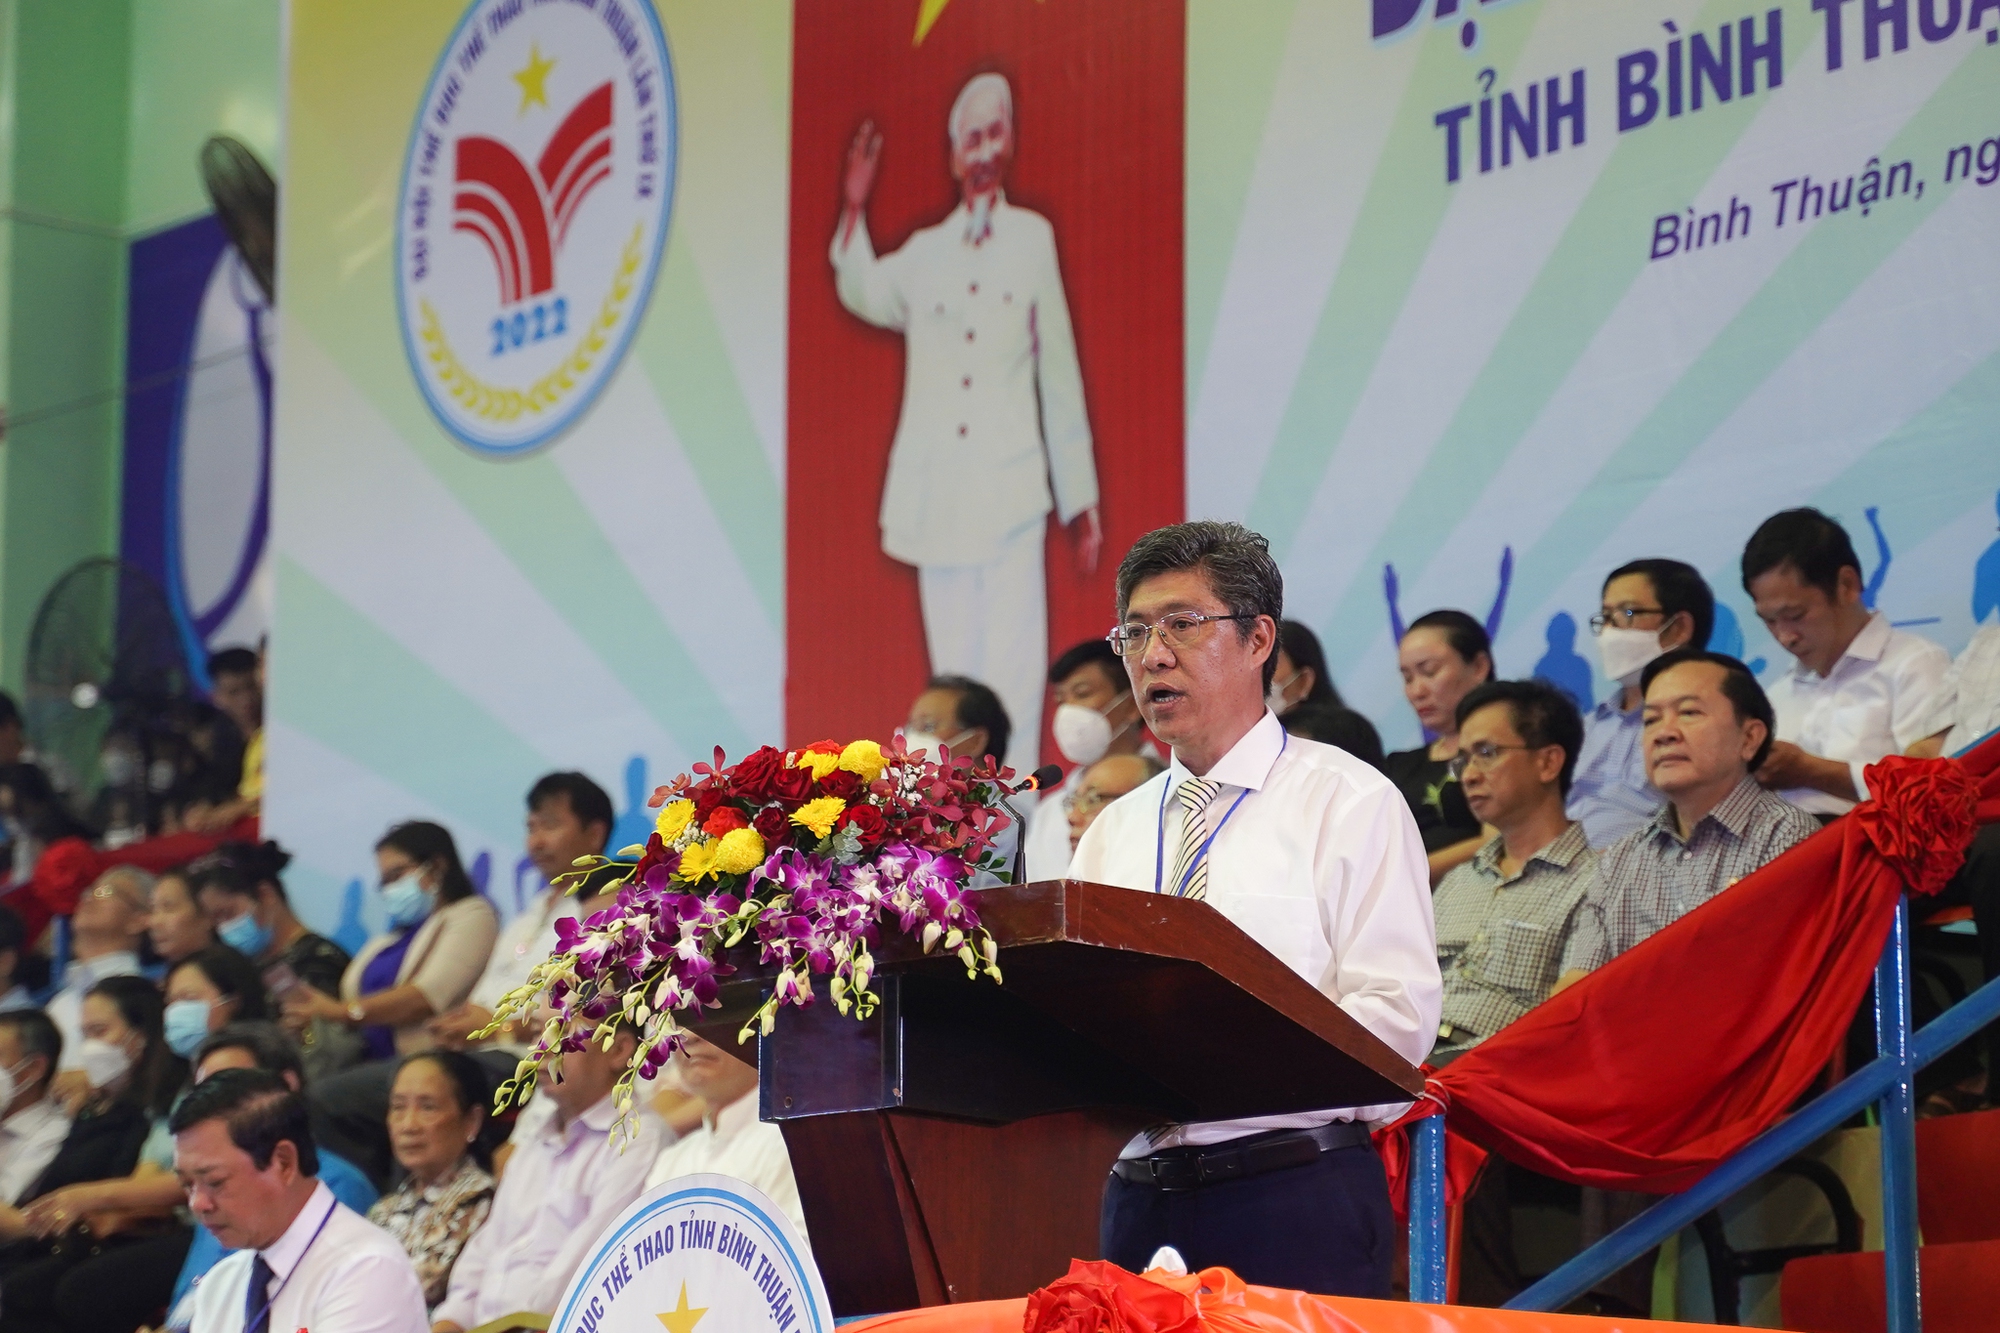 Bình Thuận: Từ một tỉnh nghèo sau 30 năm kinh tế - xã hội - du lịch... phát triển vượt bậc - Ảnh 4.